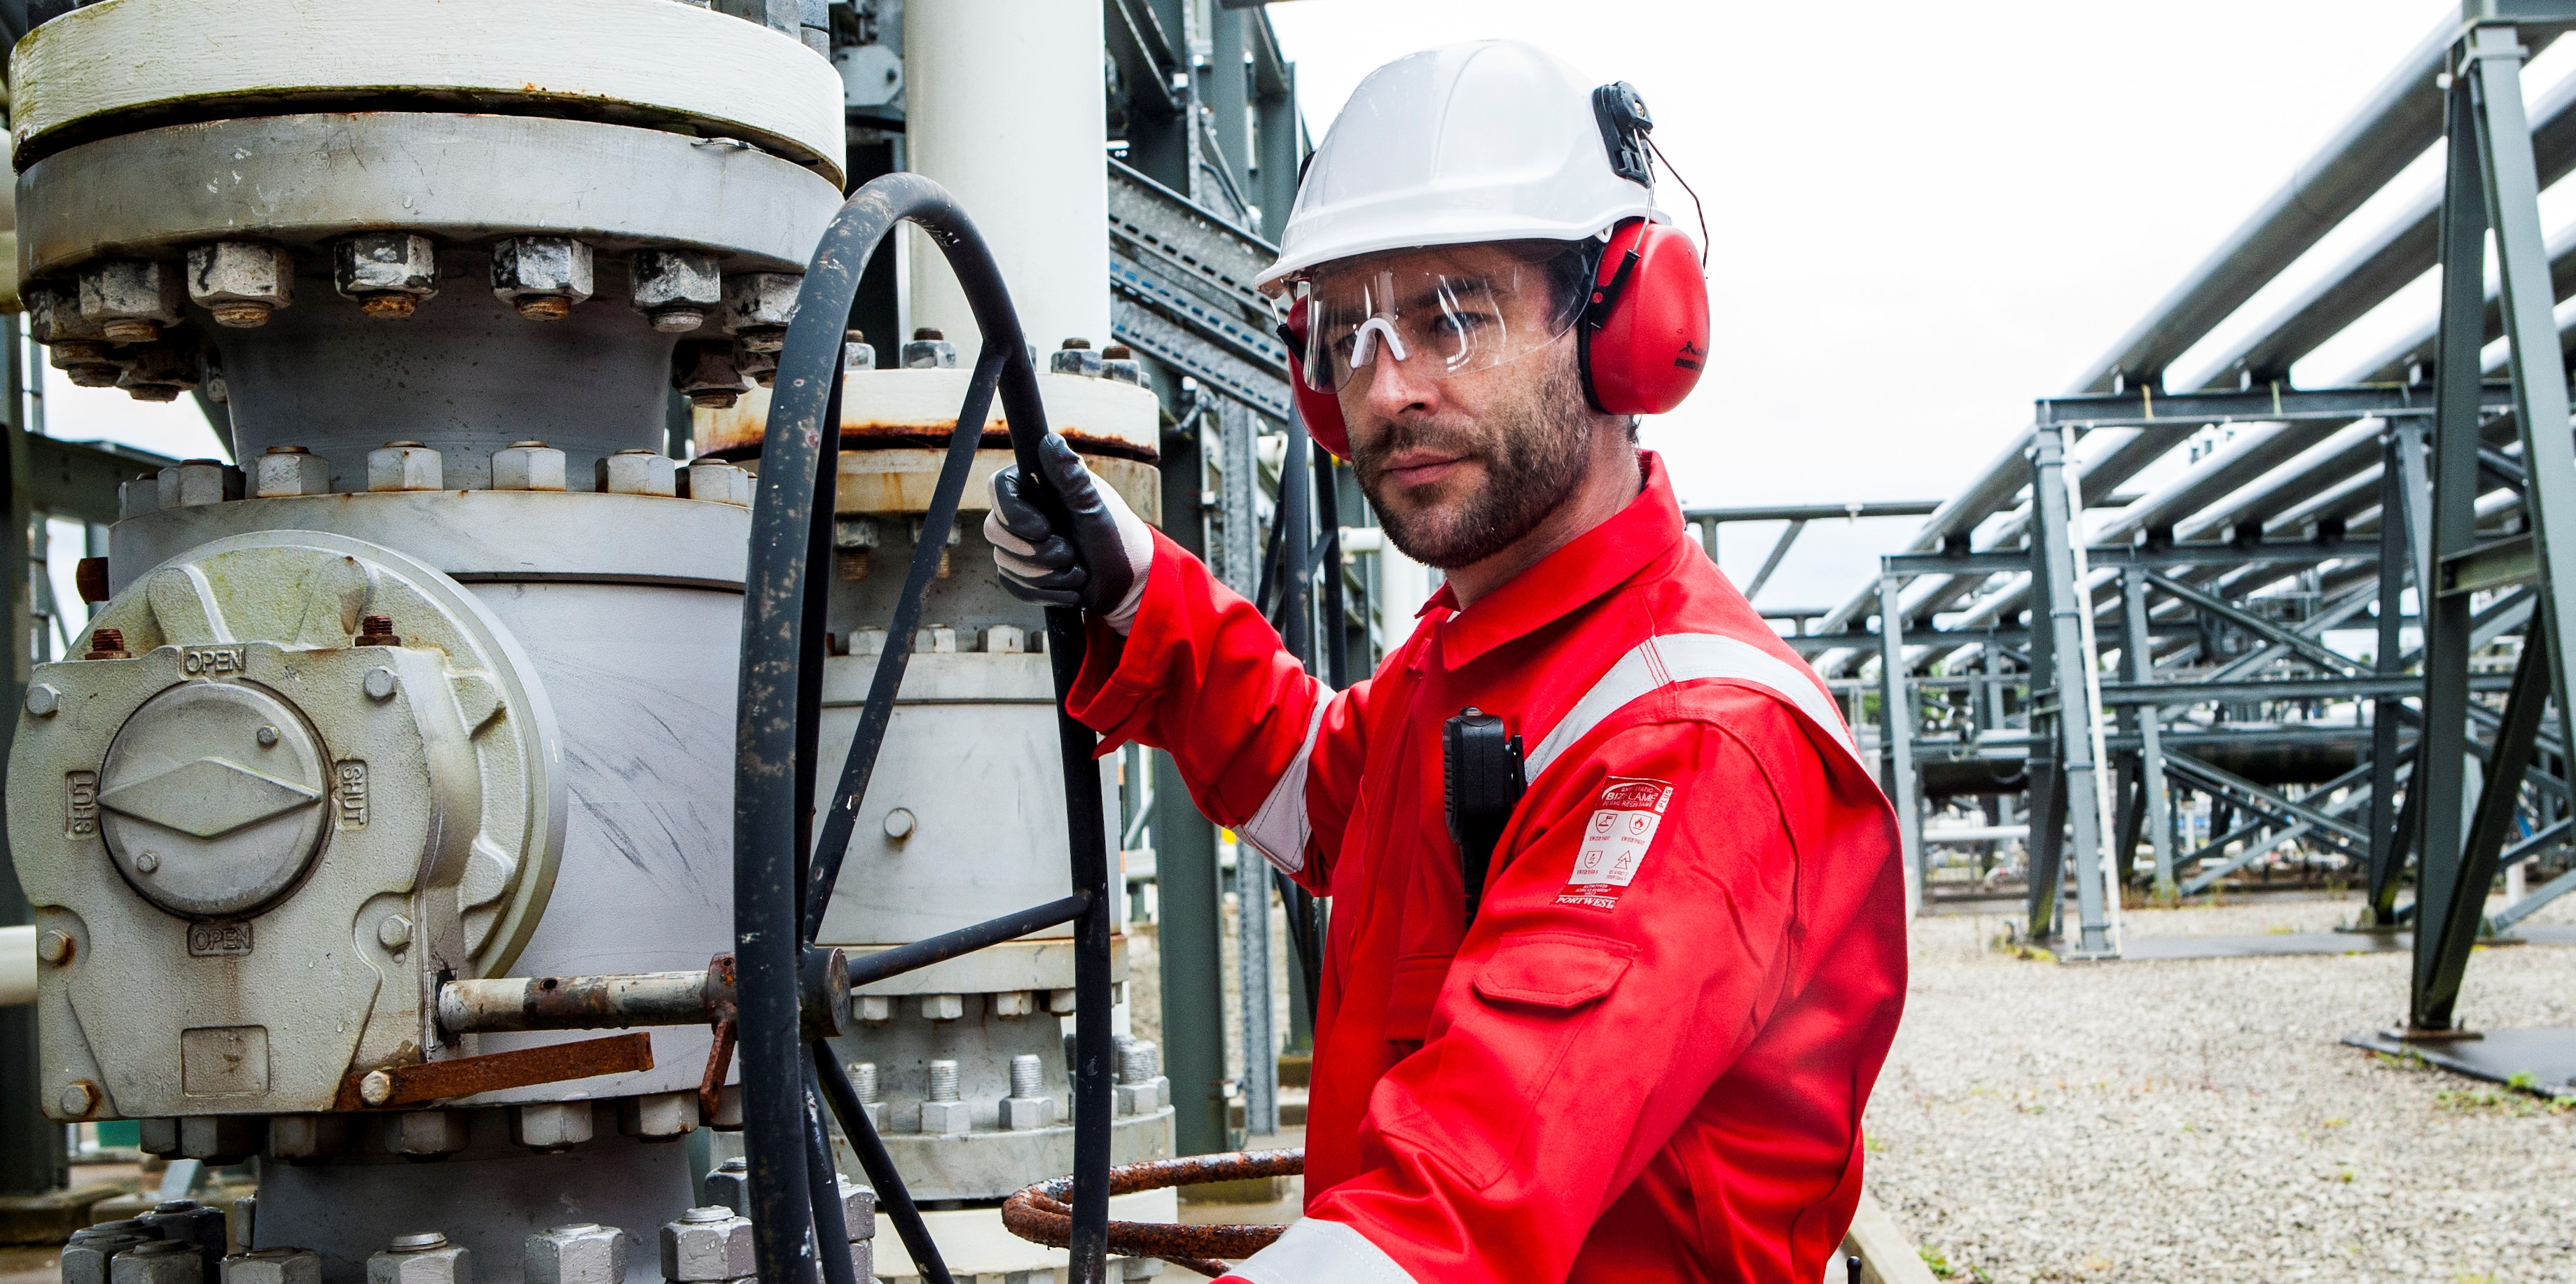 Arbeiter in industriellem Kontext in Schutzkleidung: weißer Helm, Brille, roter Ohrenschutz, schwarze Handschuhe und Schutzoverall FR50 in Rot mit Reflexstreifen.